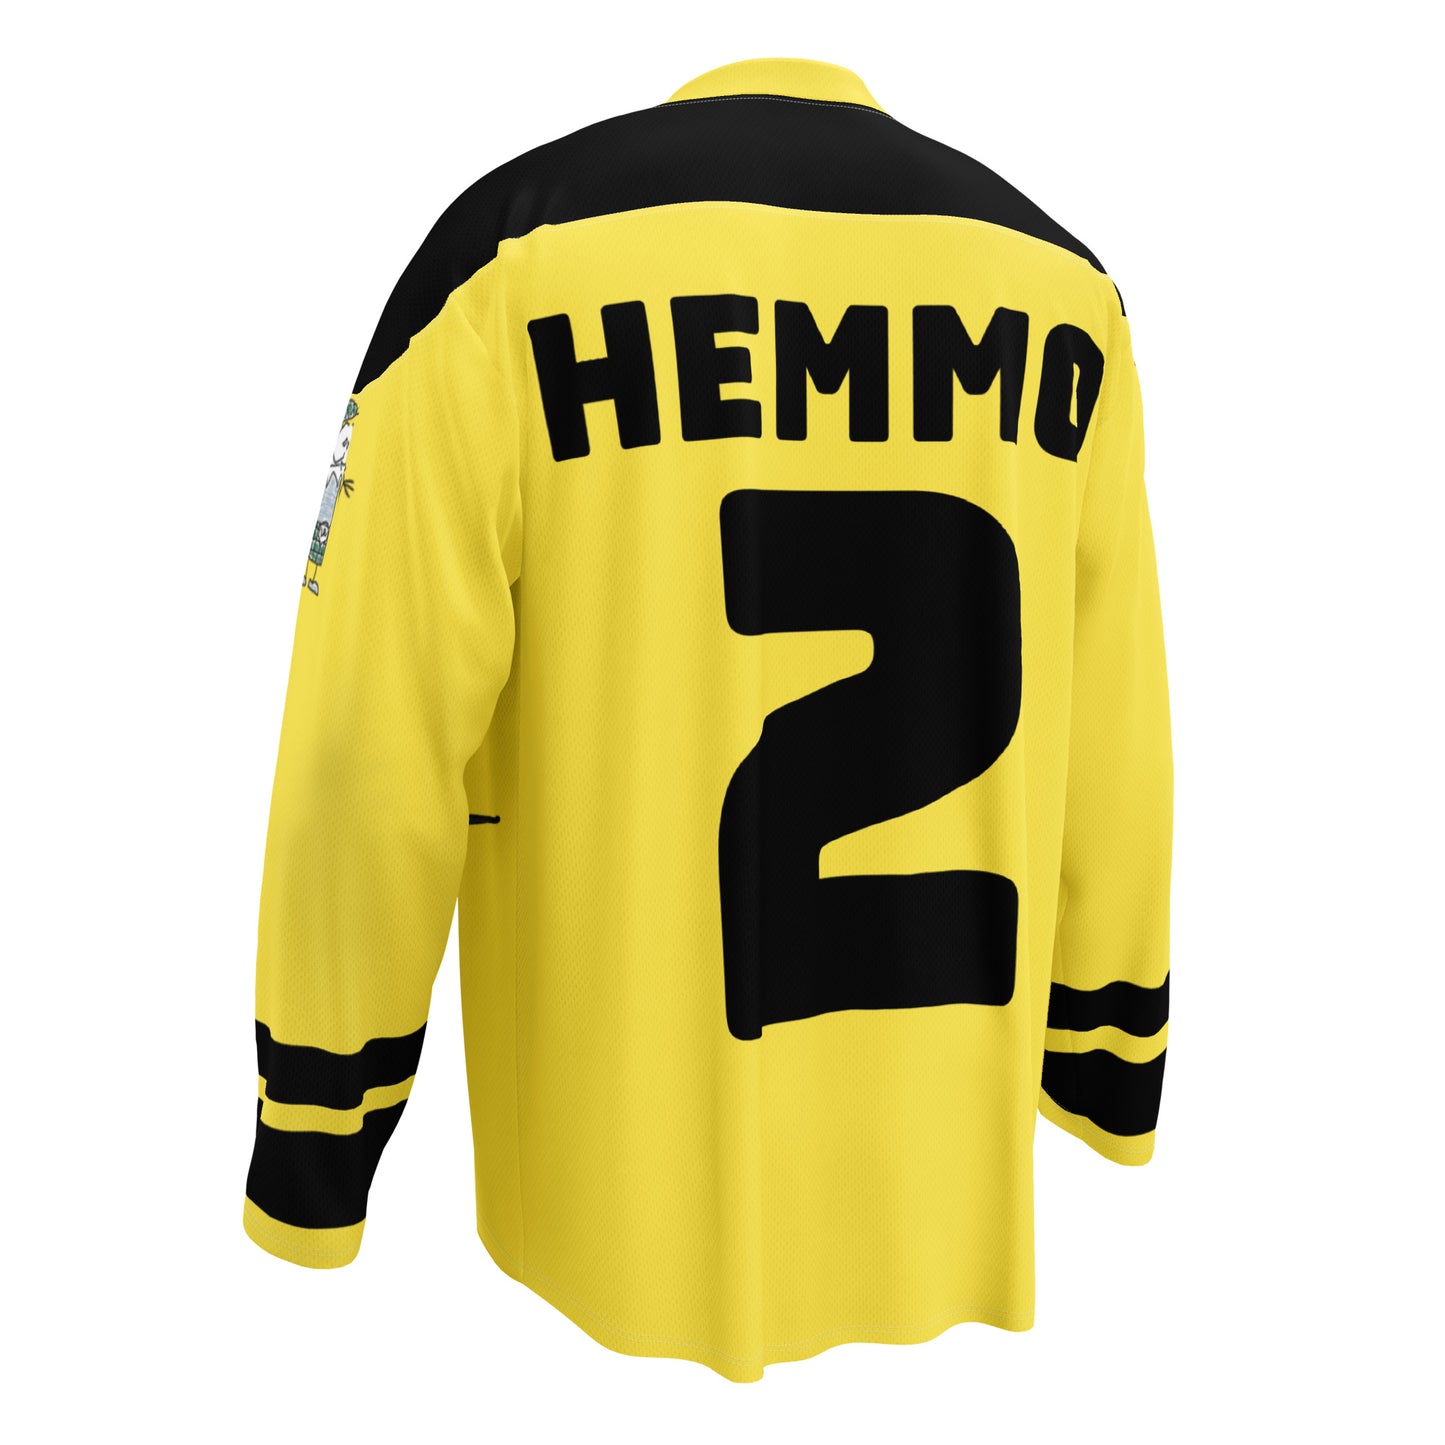 "Hemmo" hockey jersey